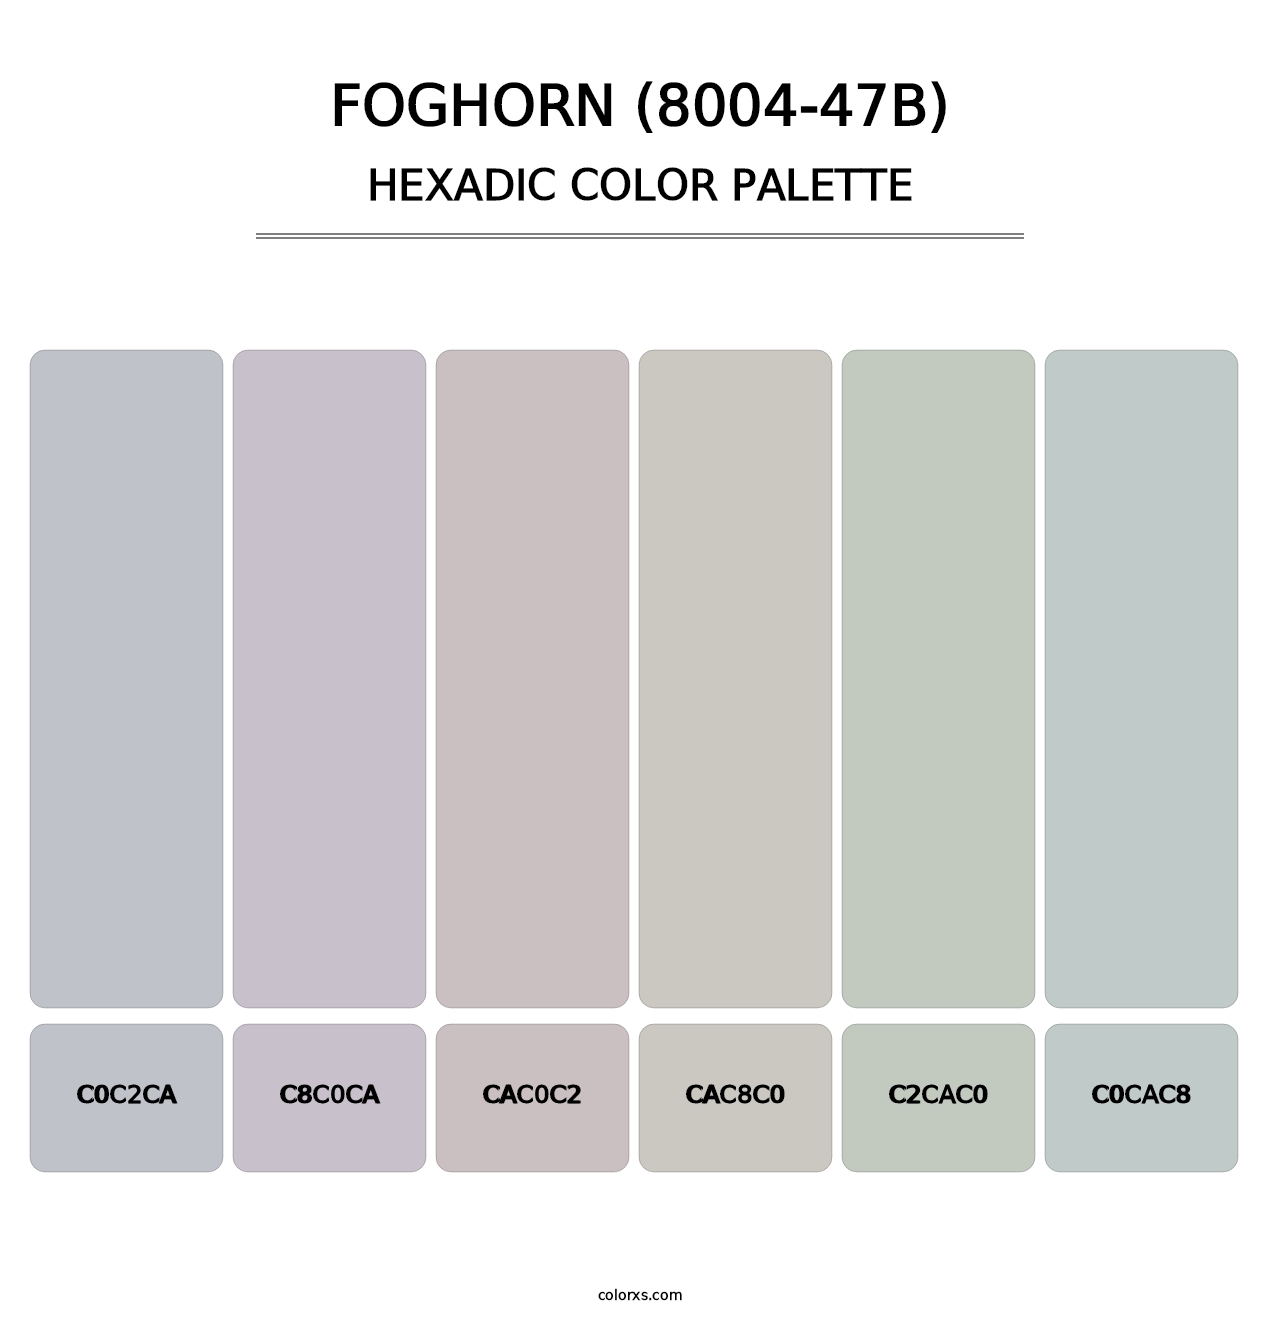 Foghorn (8004-47B) - Hexadic Color Palette